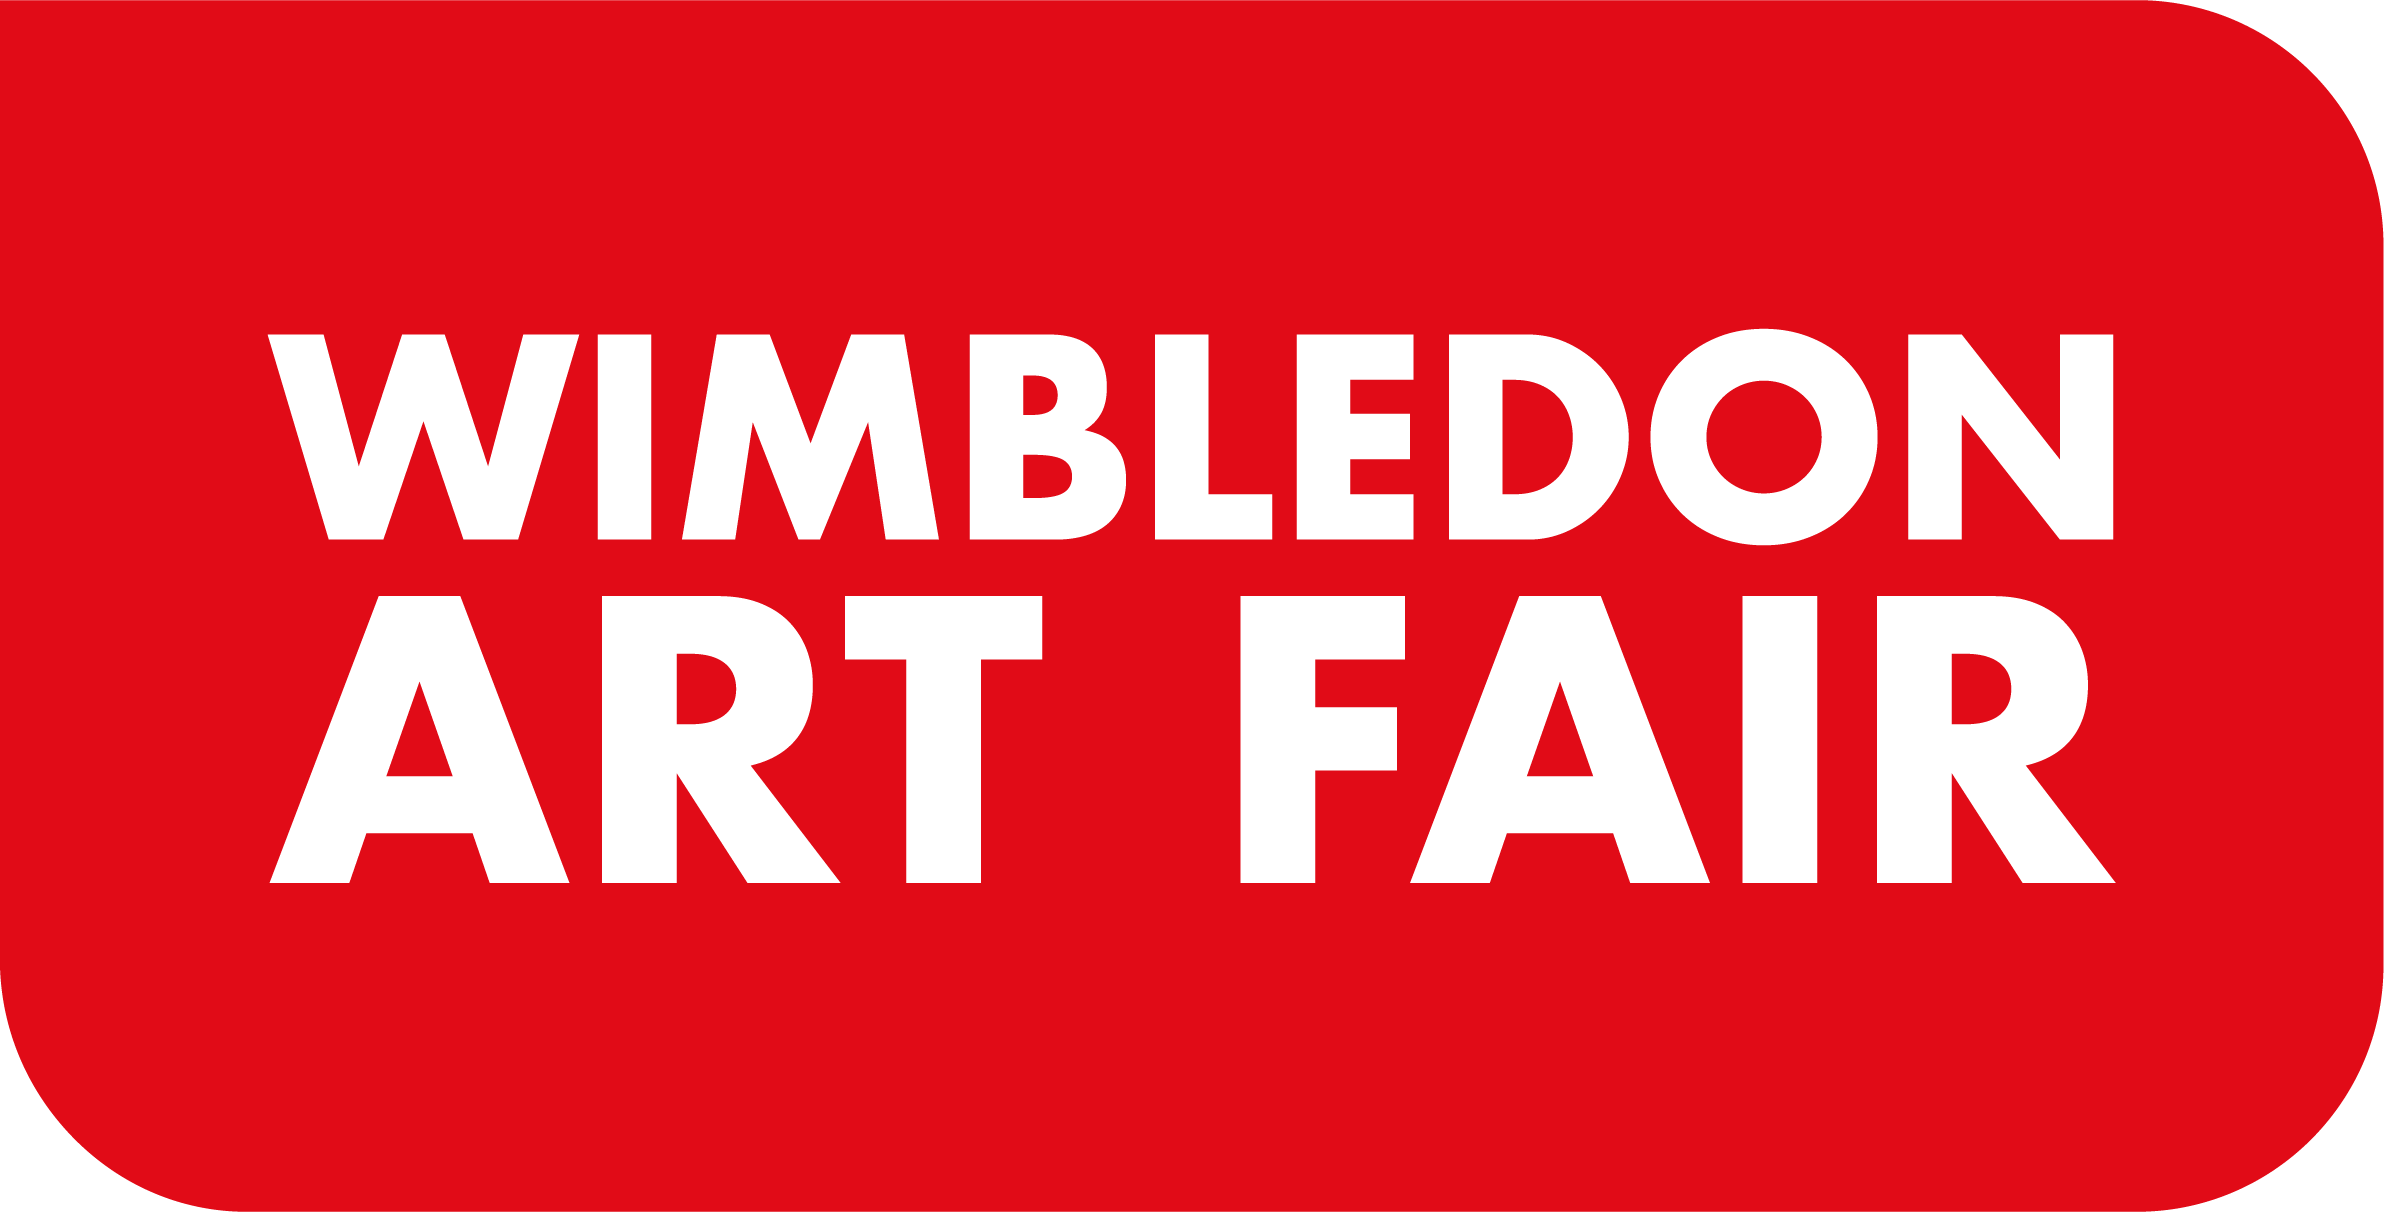 The Wimbledon Art Fair logo in red